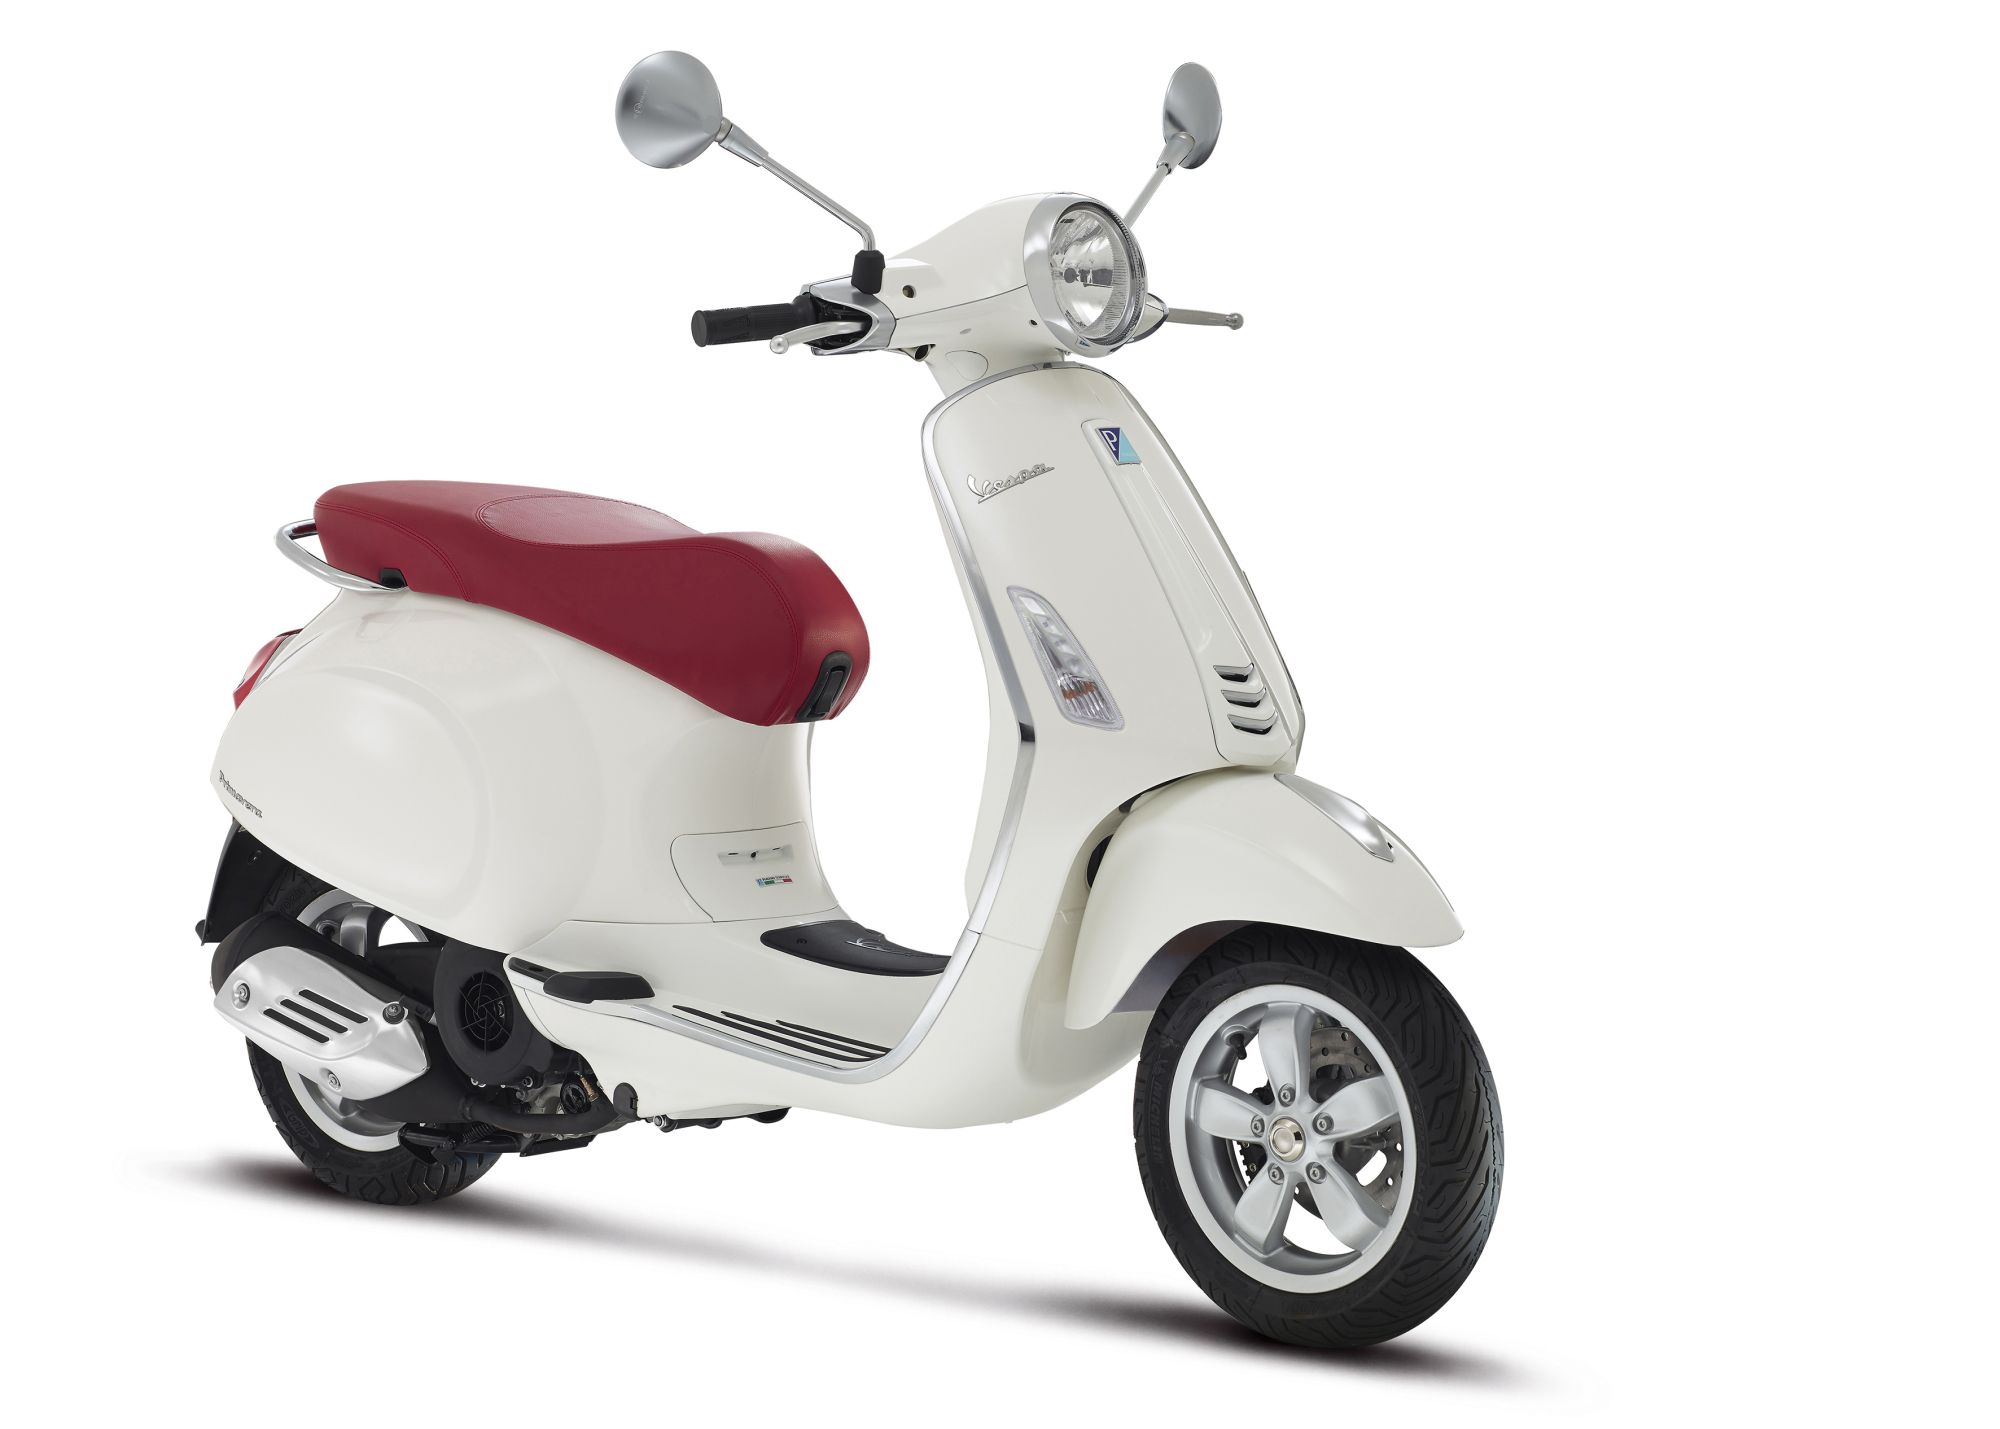 Gebrauchte Vespa Primavera 50 4T 4V Motorräder kaufen